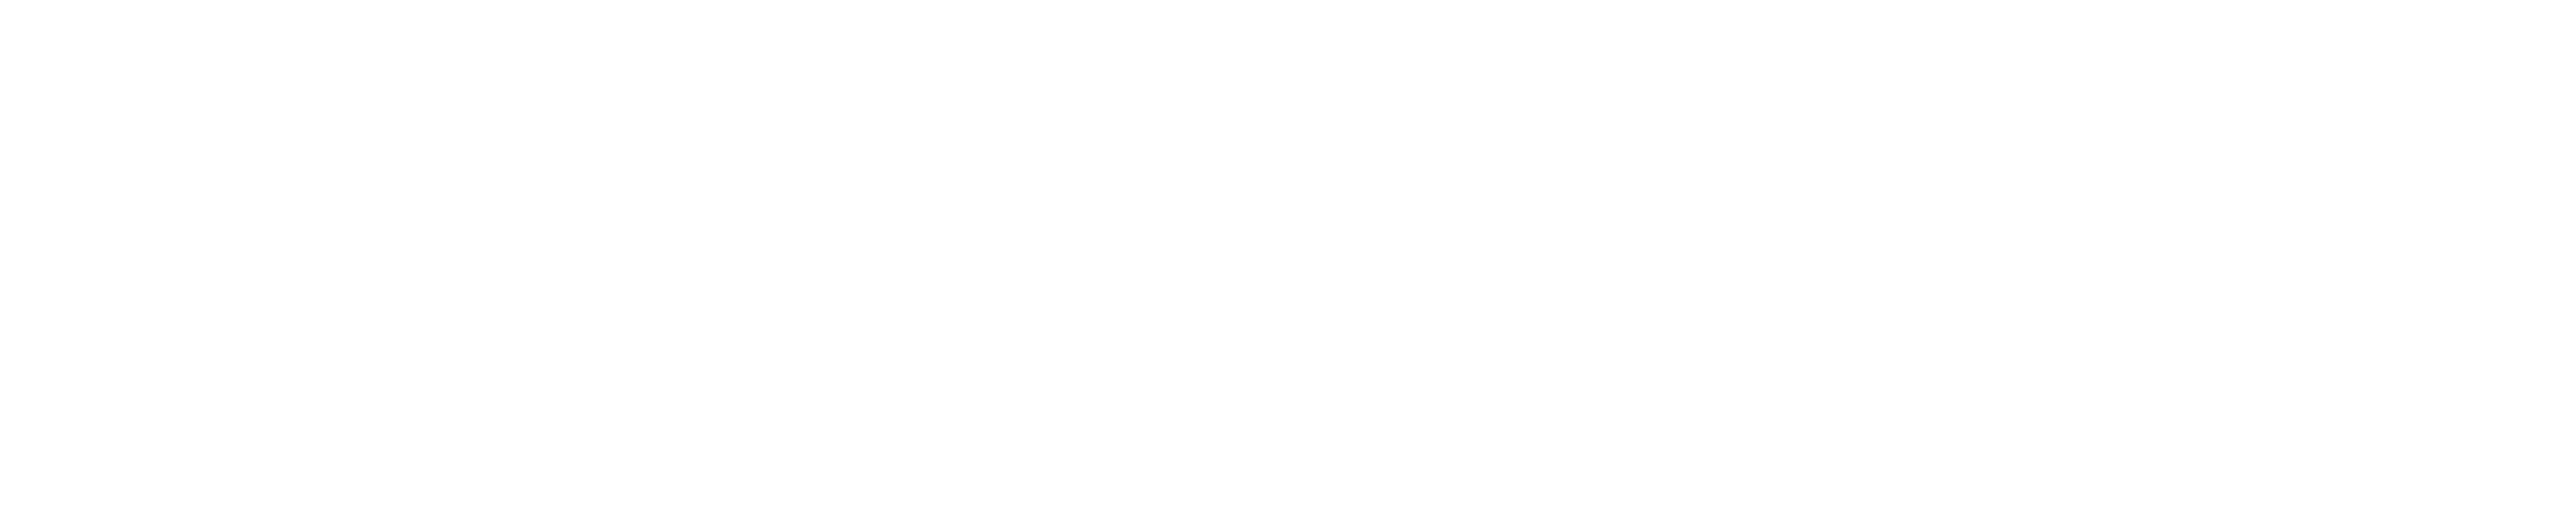 Neighborhood House 